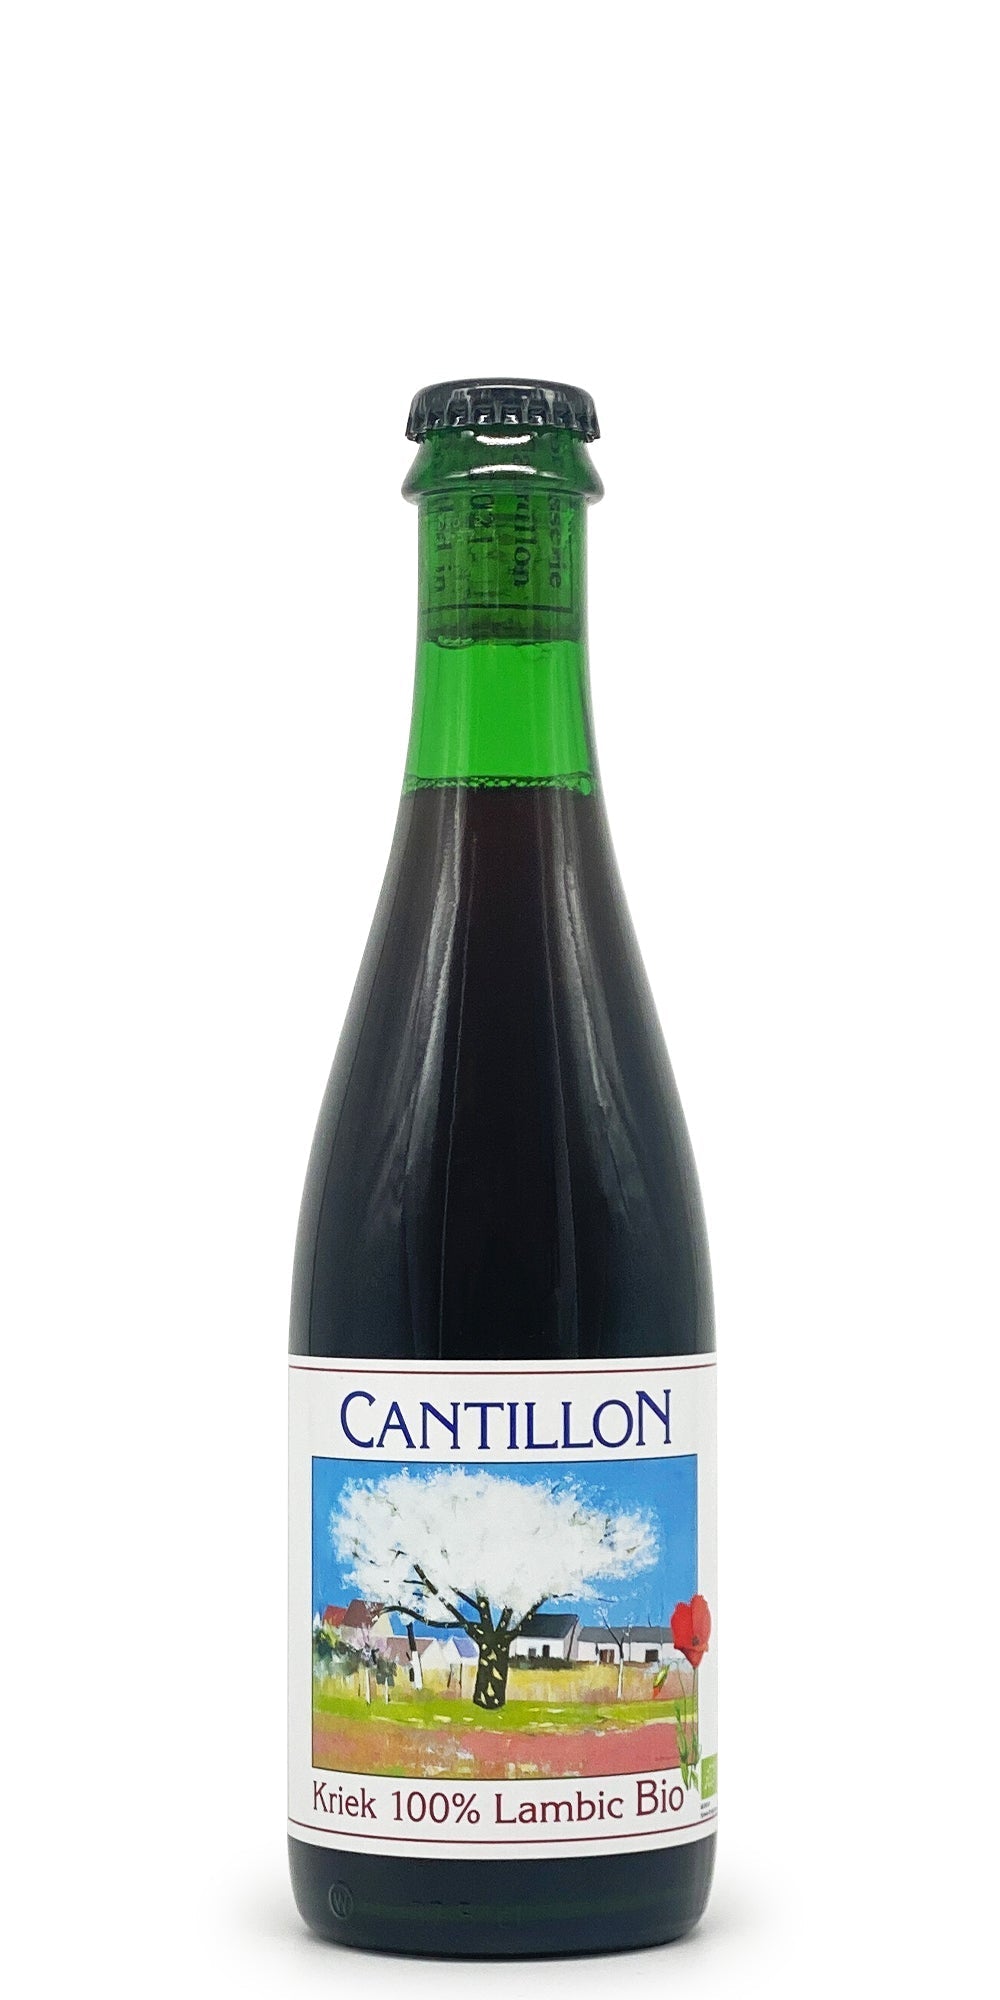 Cantillon - Kriek (2018) (subscriber only)